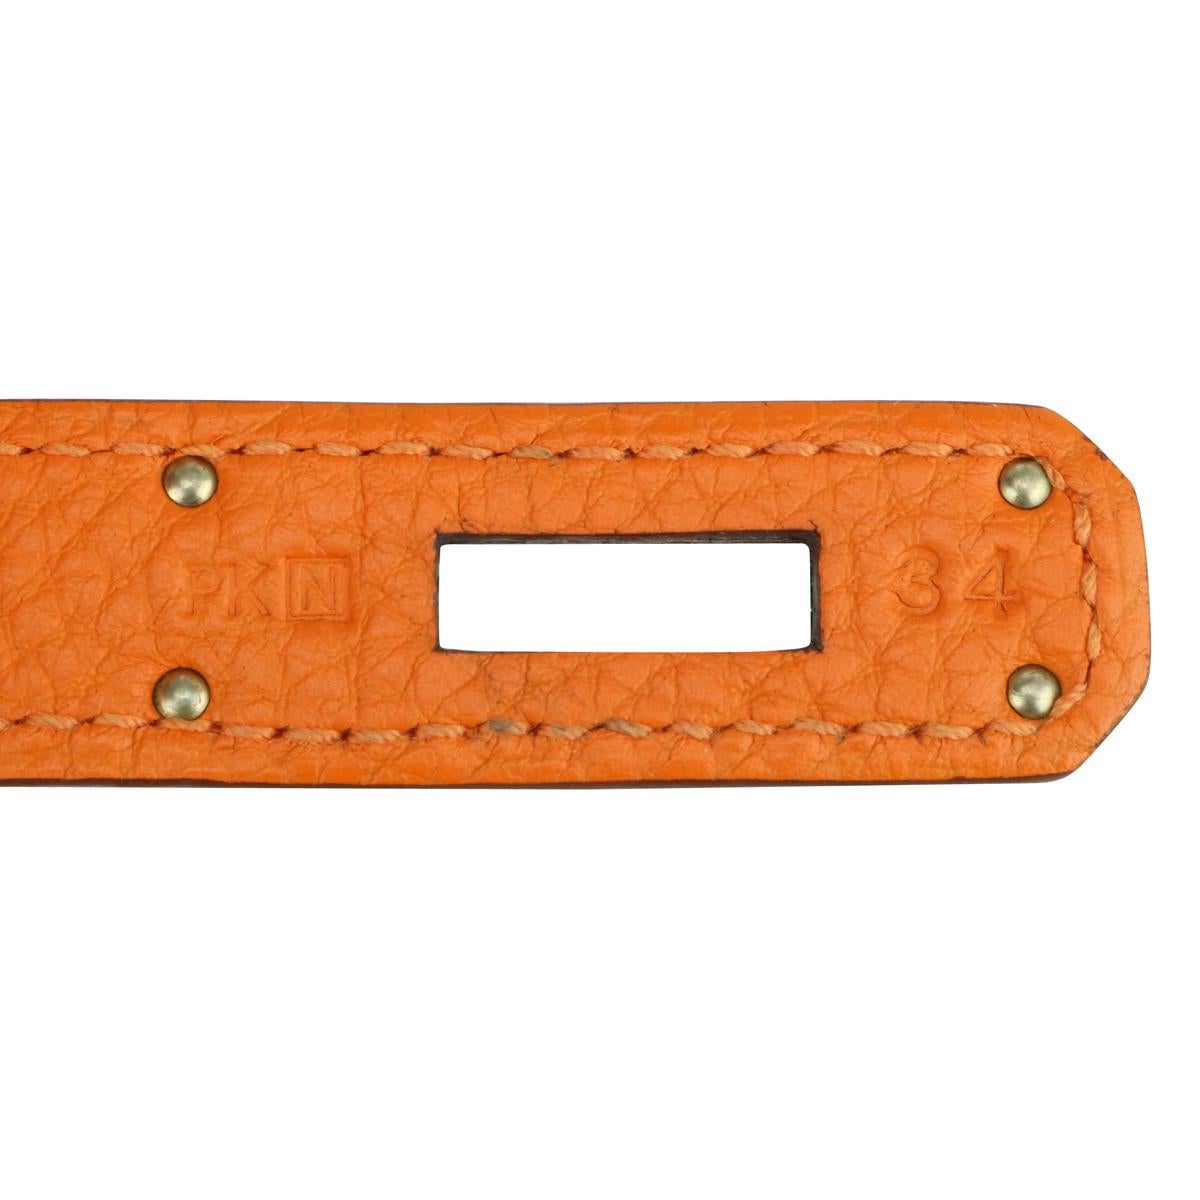 Hermès Birkin Bag 35cm Orange Togo Leather with Palladium Hardware Stamp N 2010 12